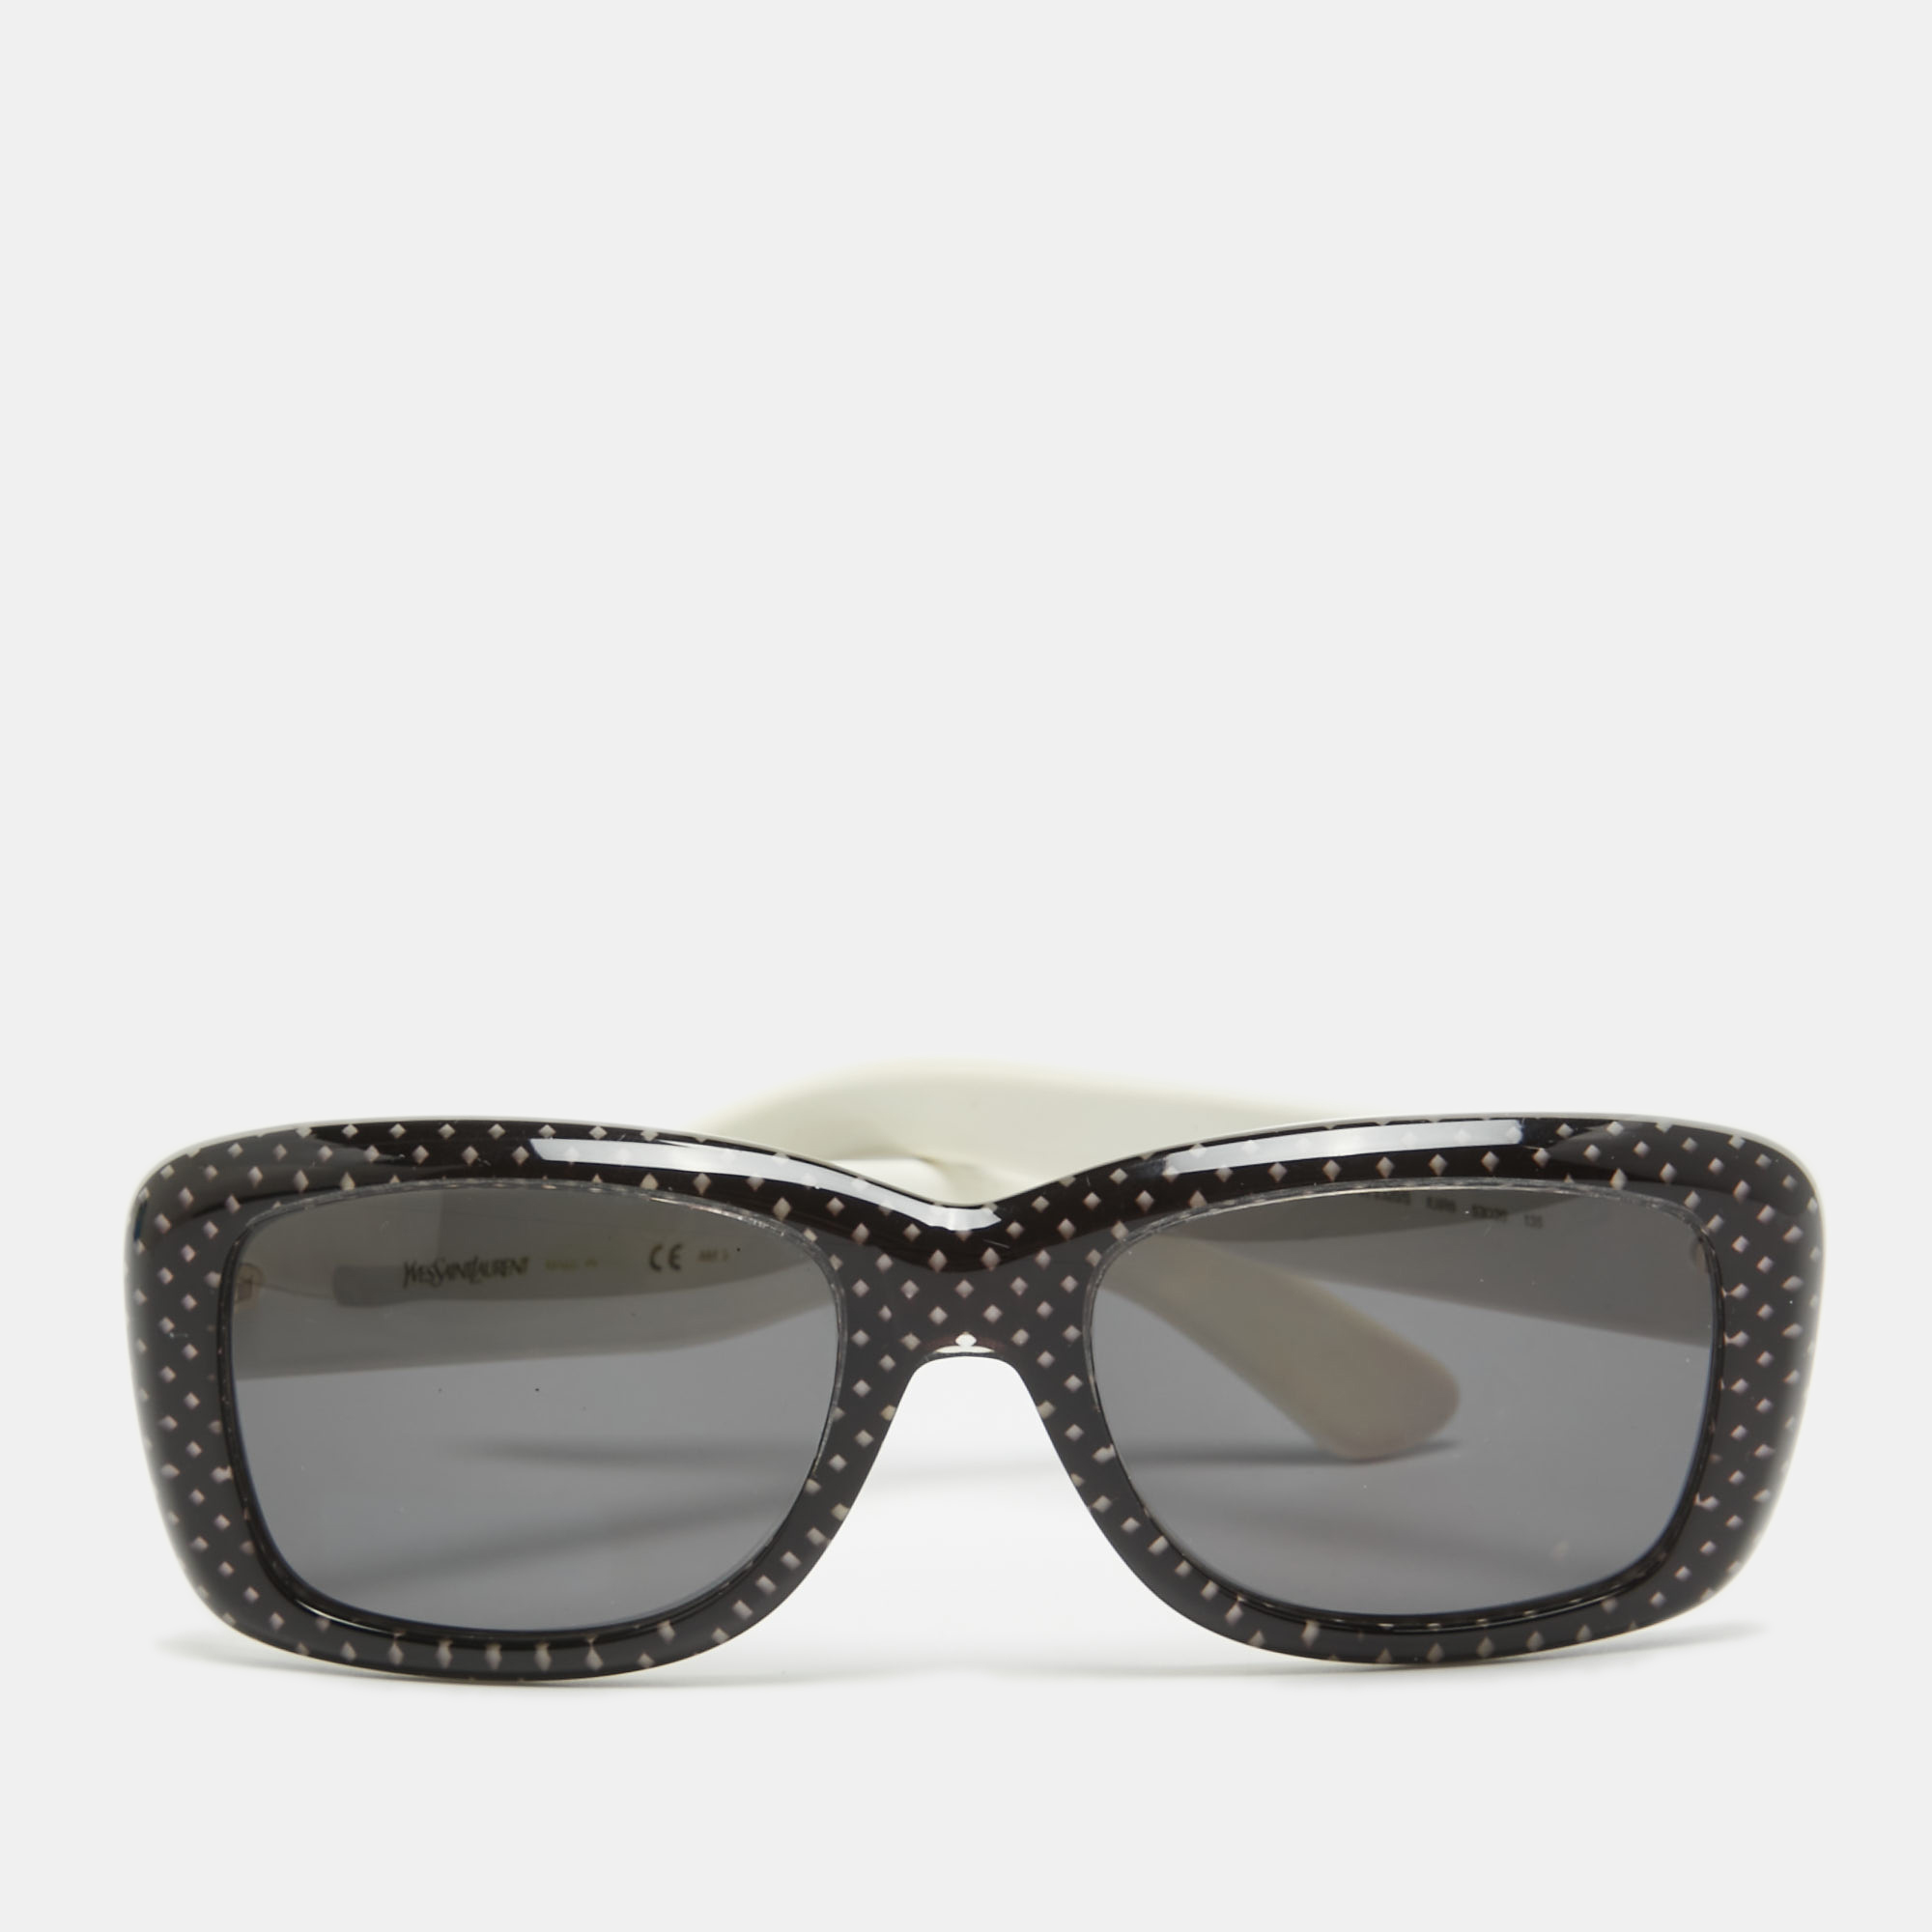 Saint laurent paris saint laurent black/white printed 2320/s rectangular sunglasses